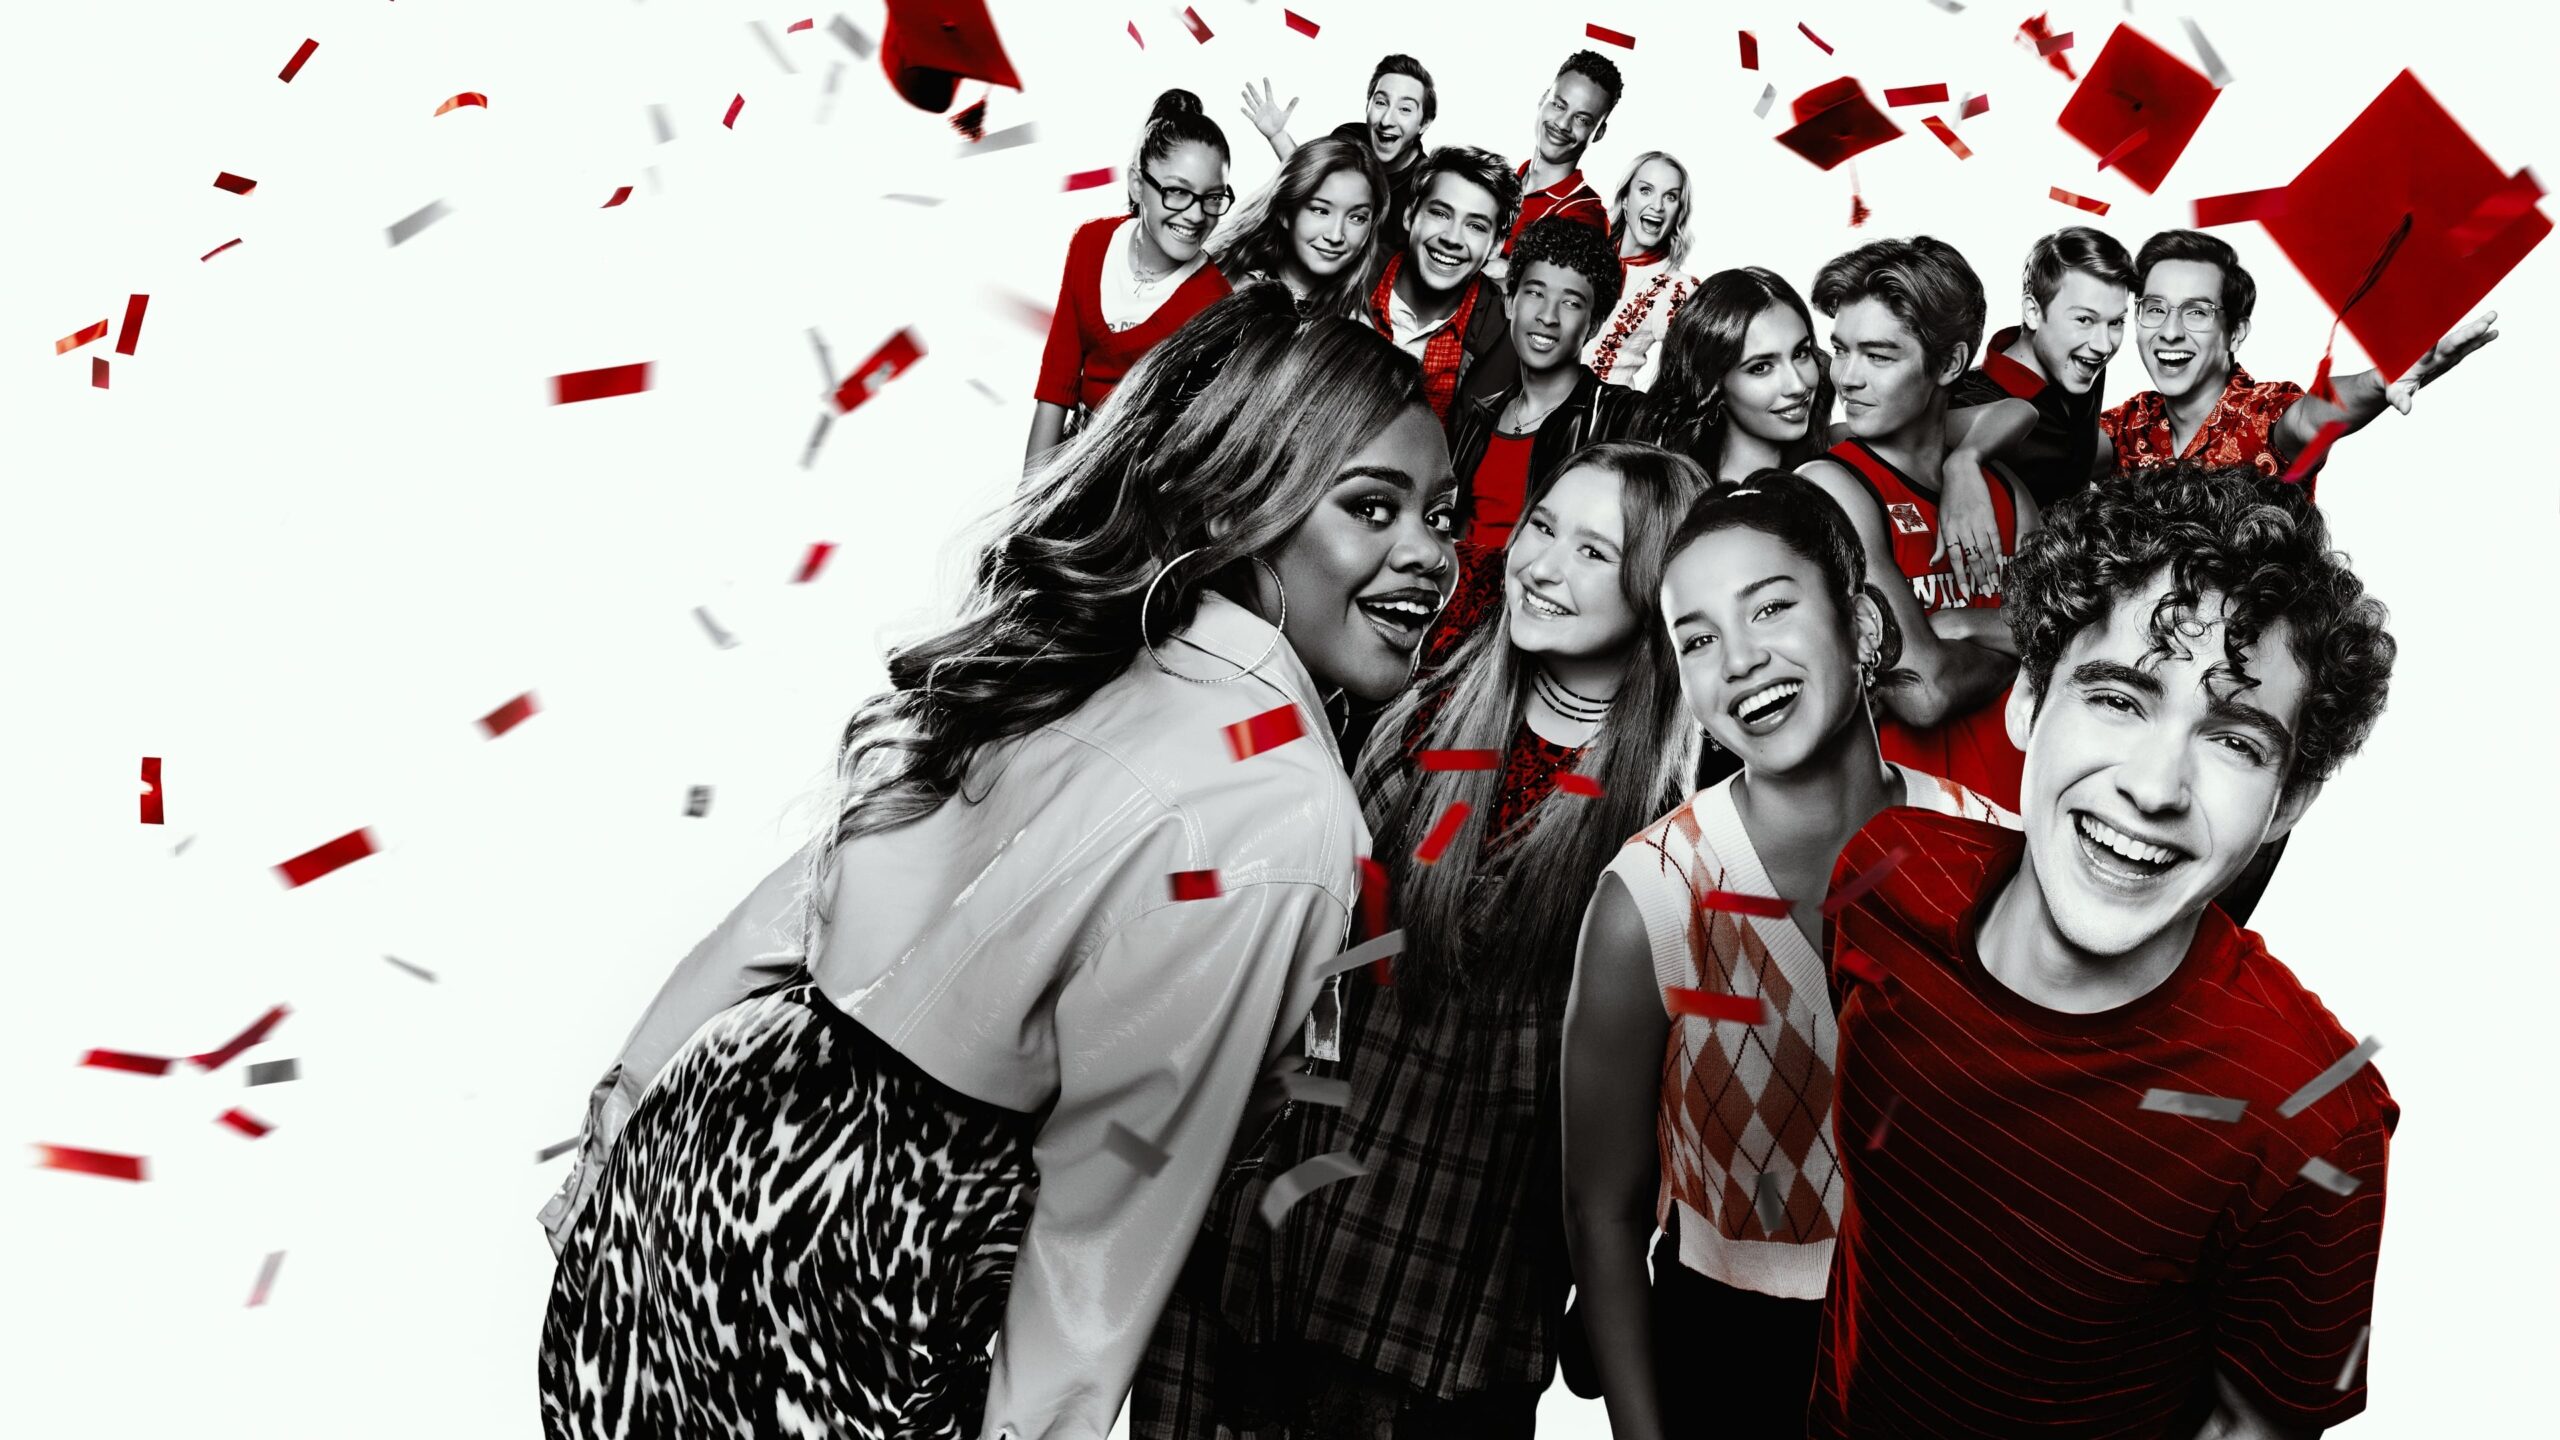 High School Musical: The Musical: The Series season 4